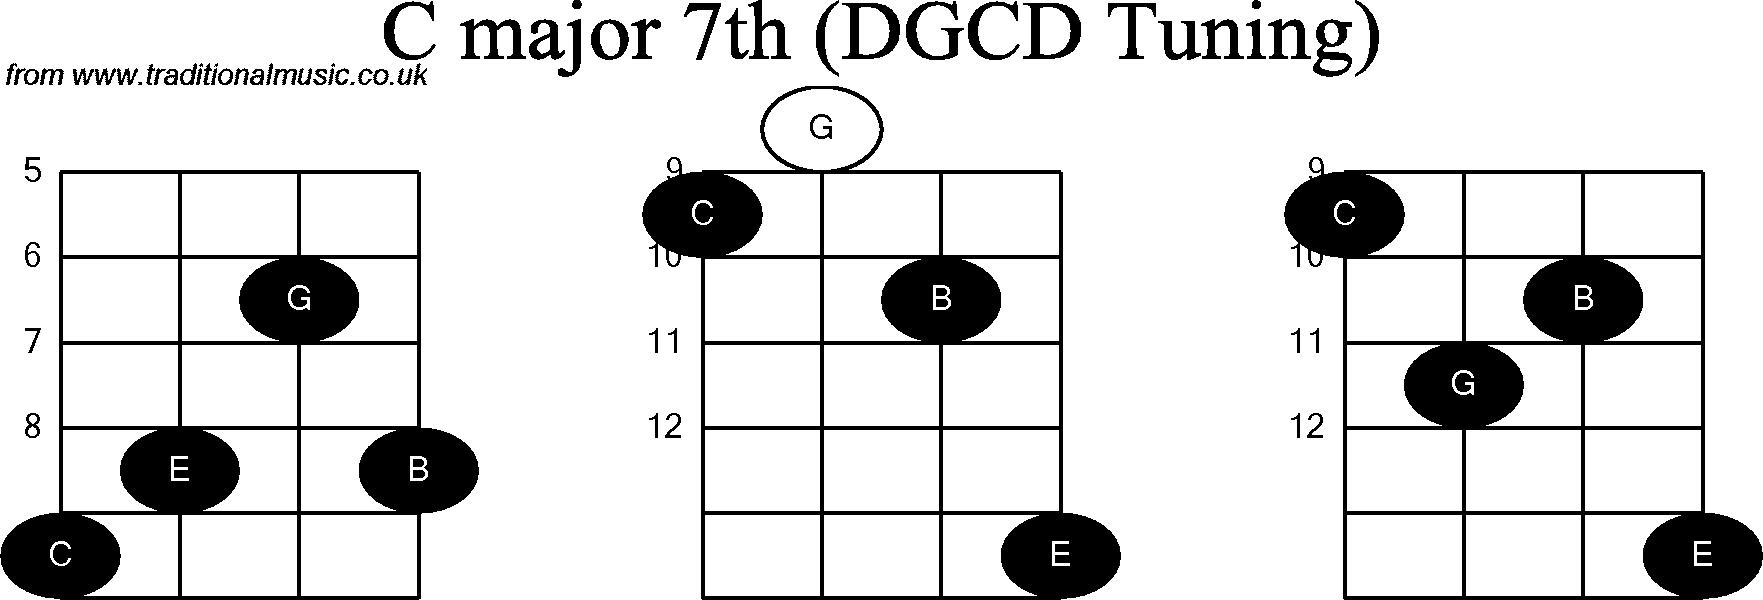 Chord diagrams for Banjo(G Modal) C Major7th